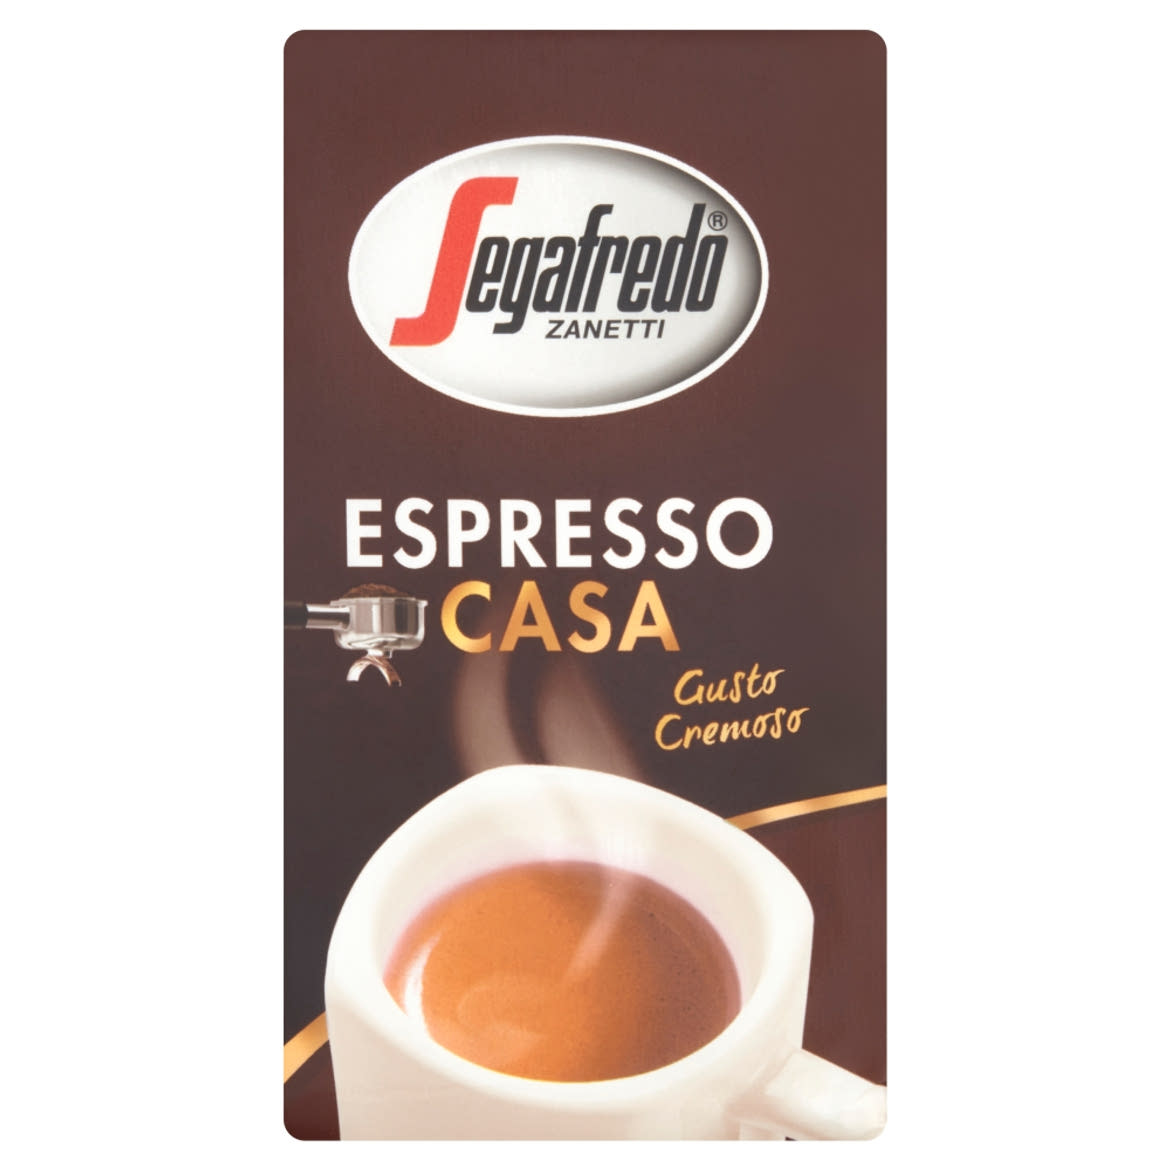 Segafredo Zanetti Espresso Casa őrölt, pörkölt kávé